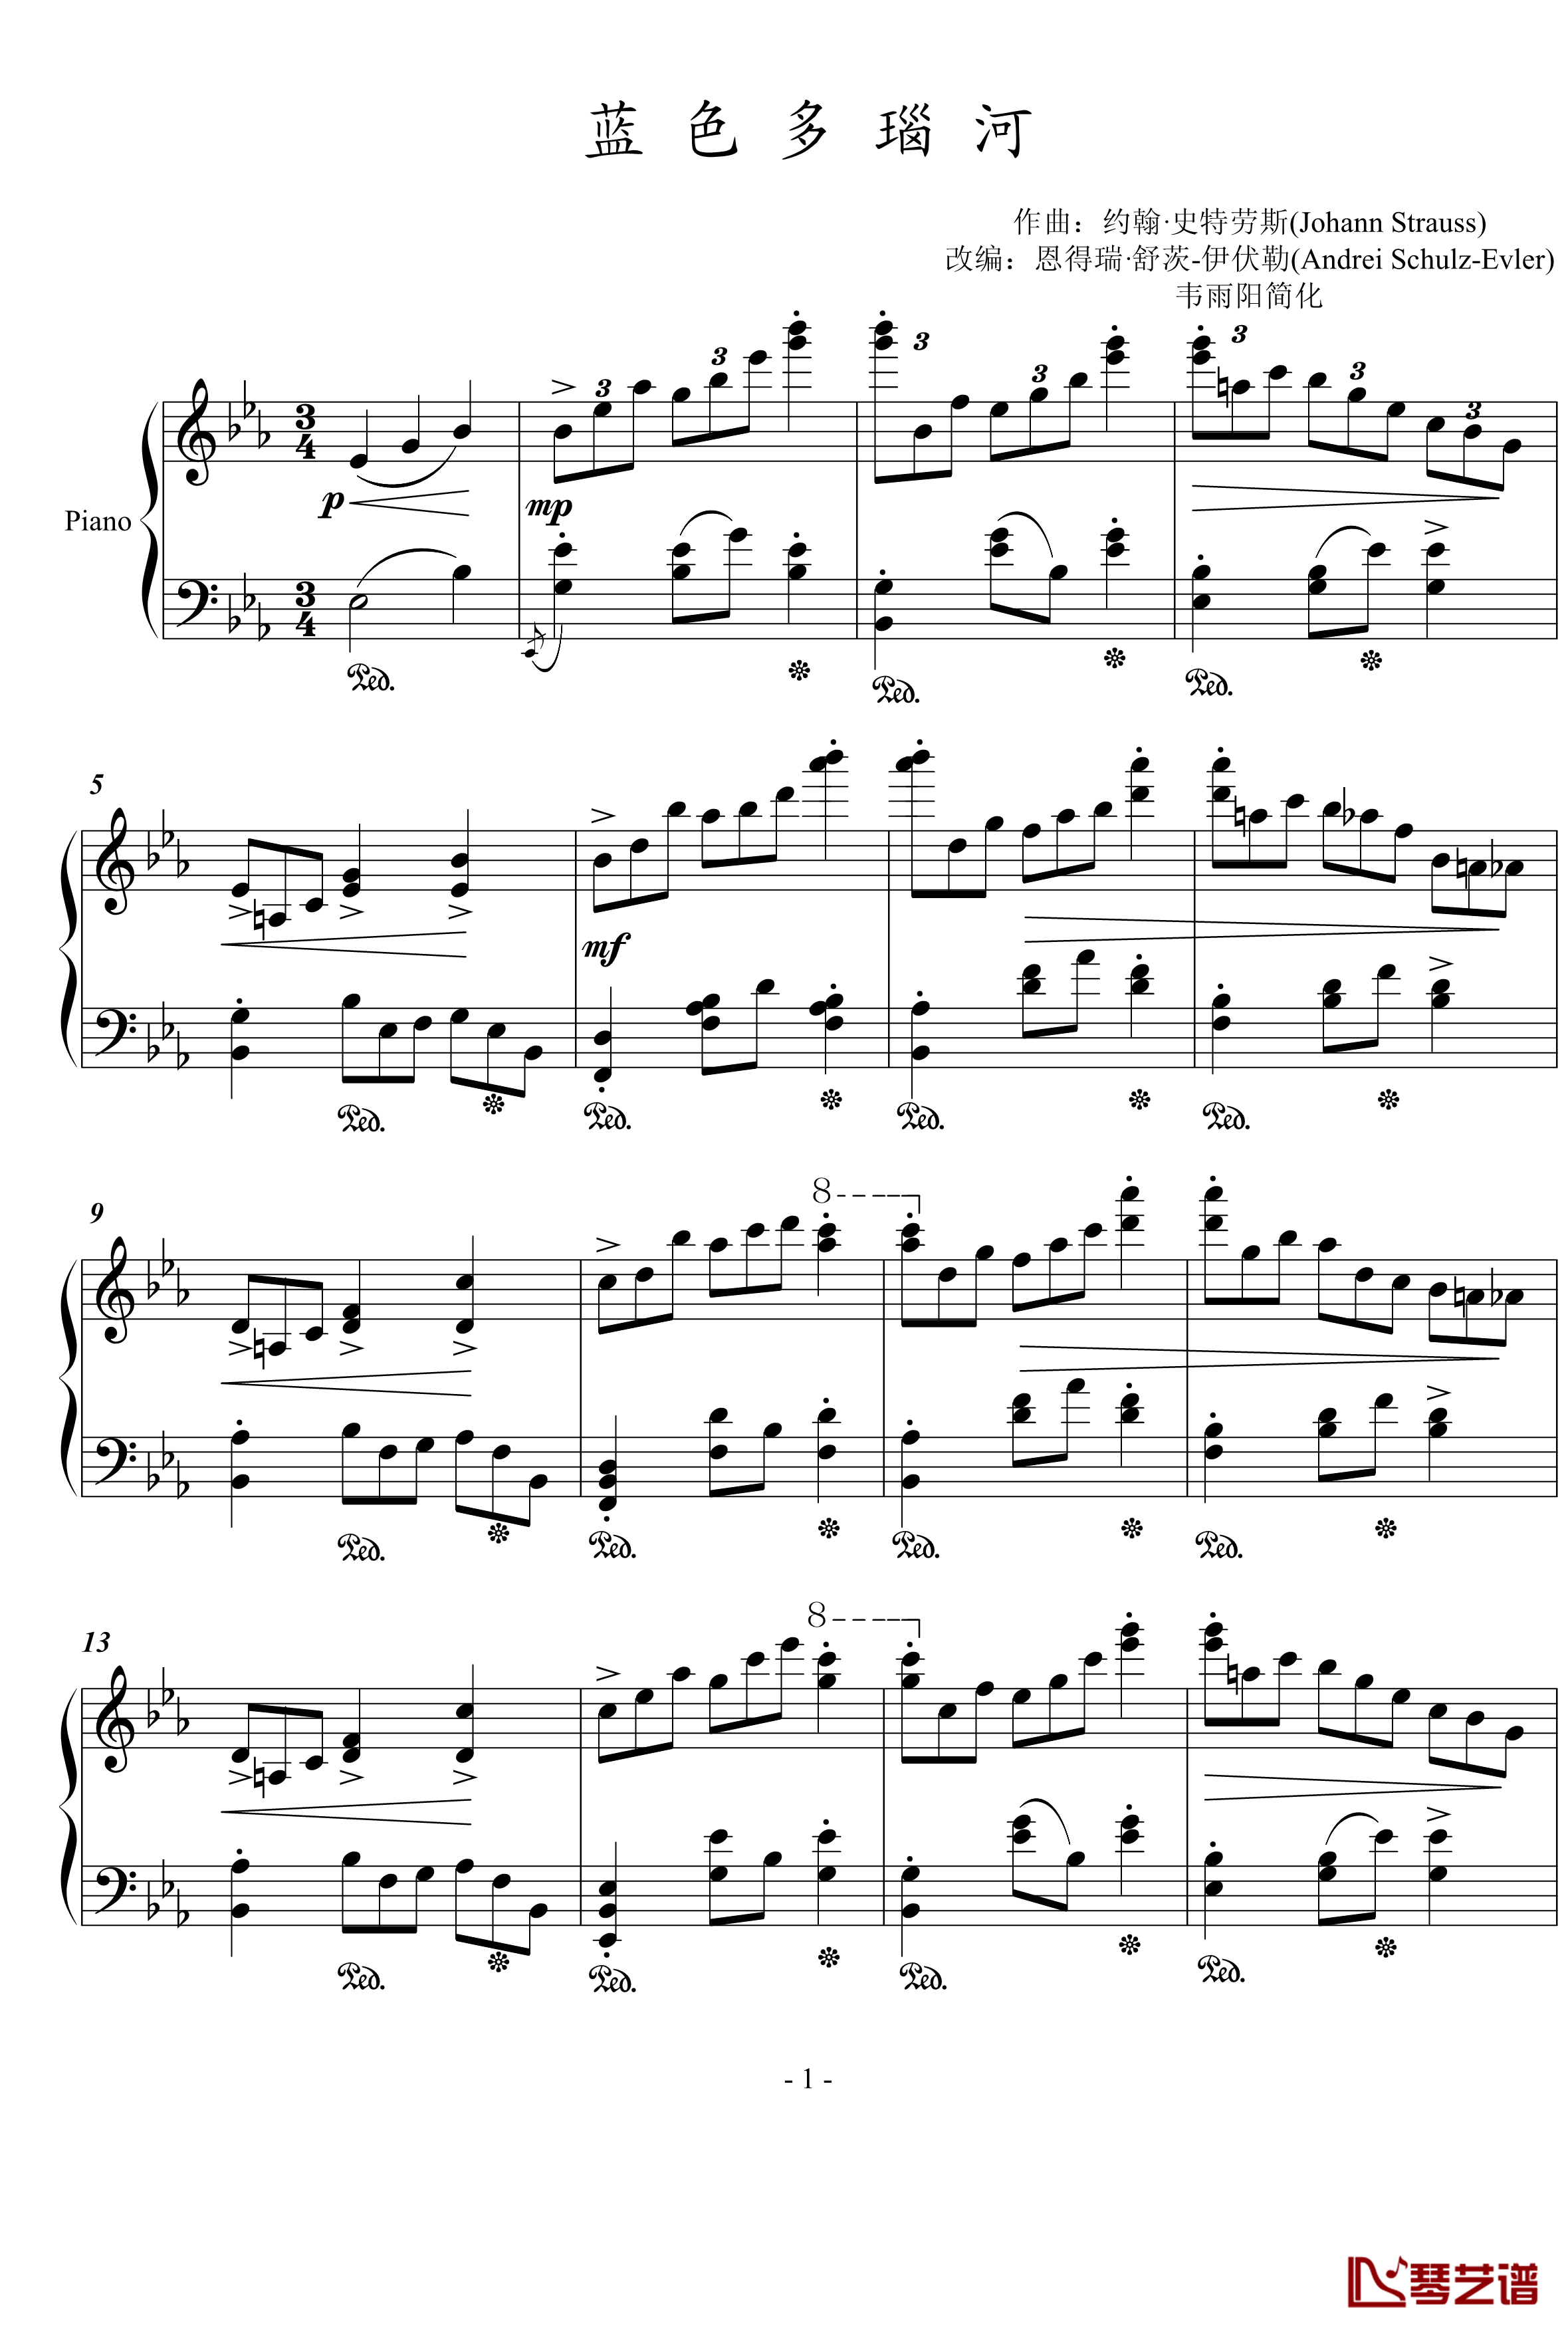 蓝色多瑙河钢琴谱-简化版-世界名曲1